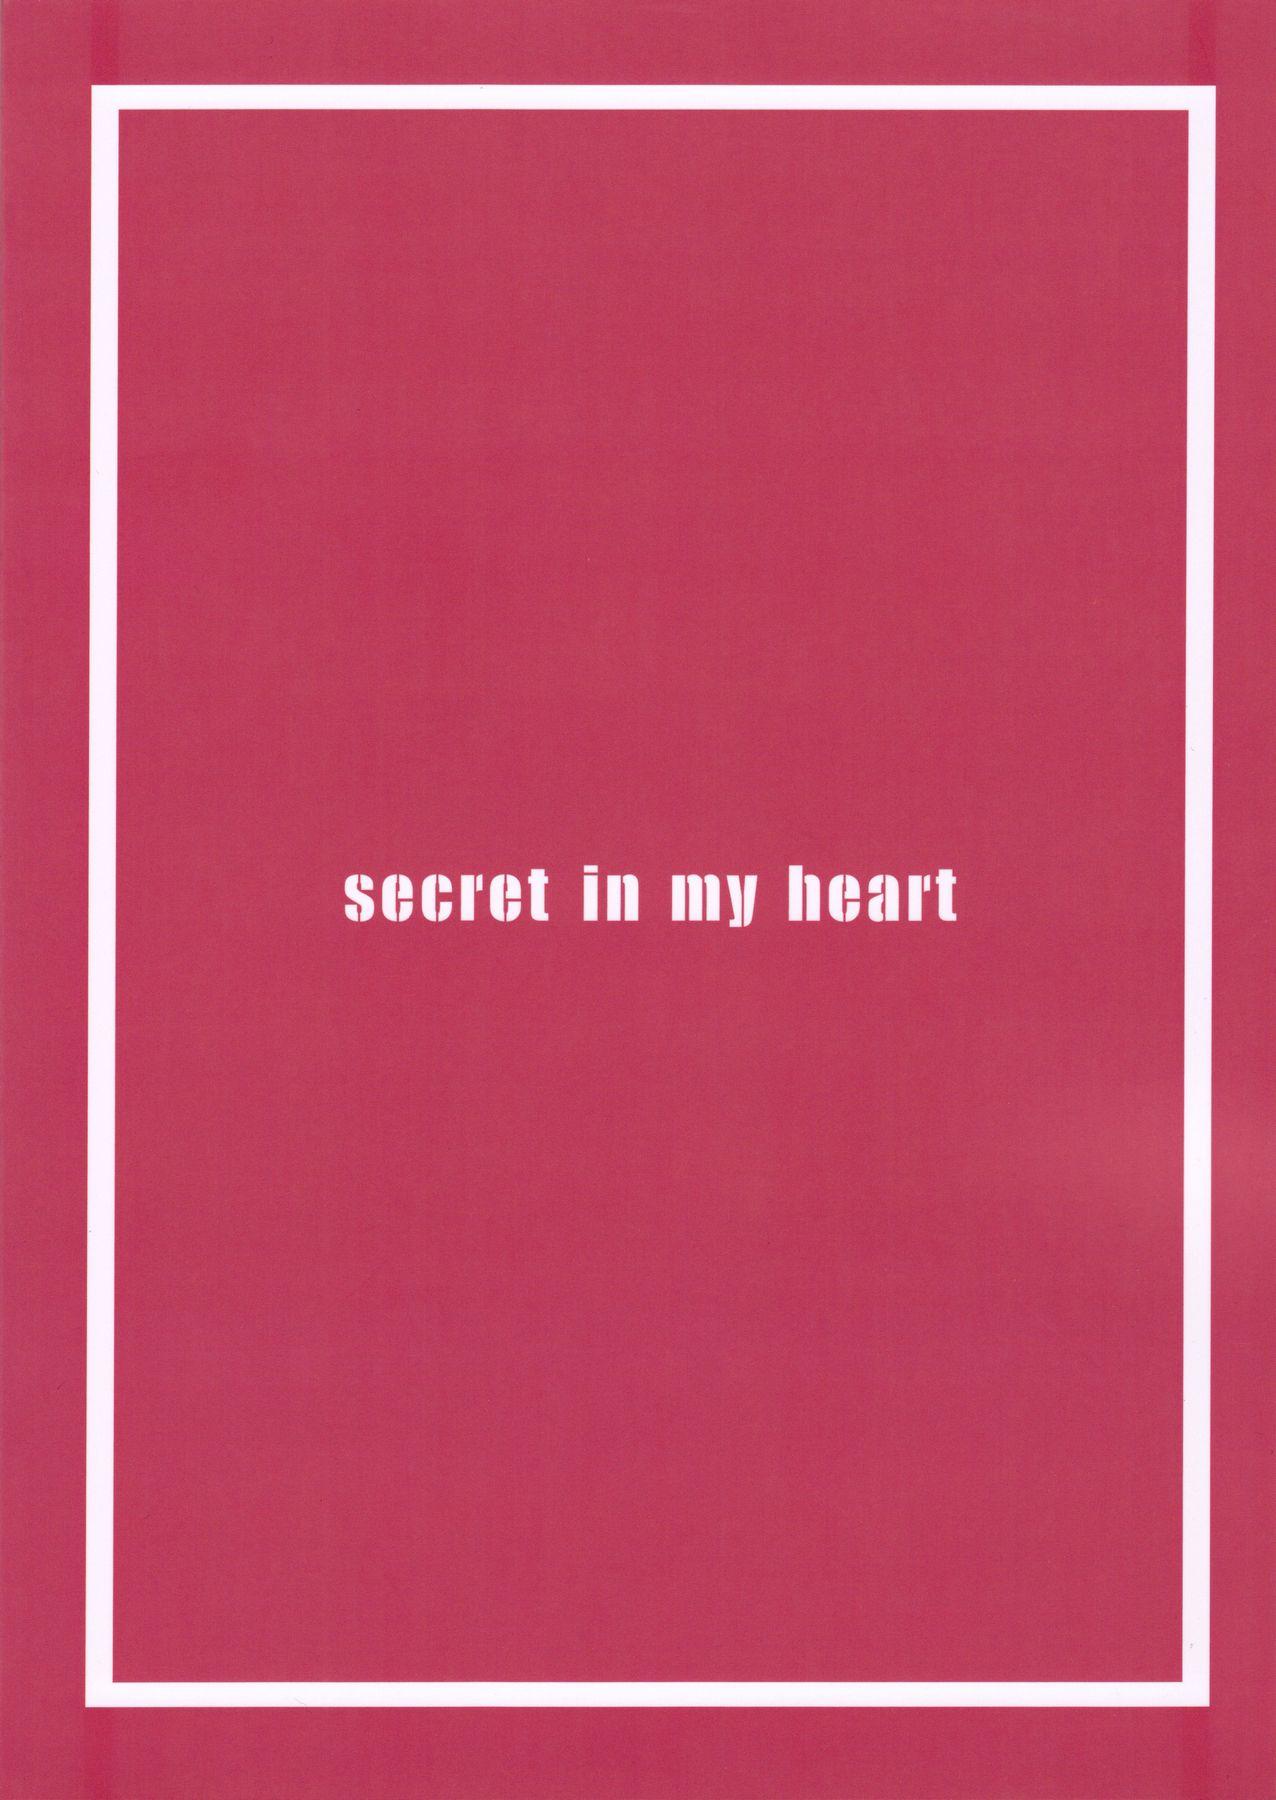 secret in my heart 21